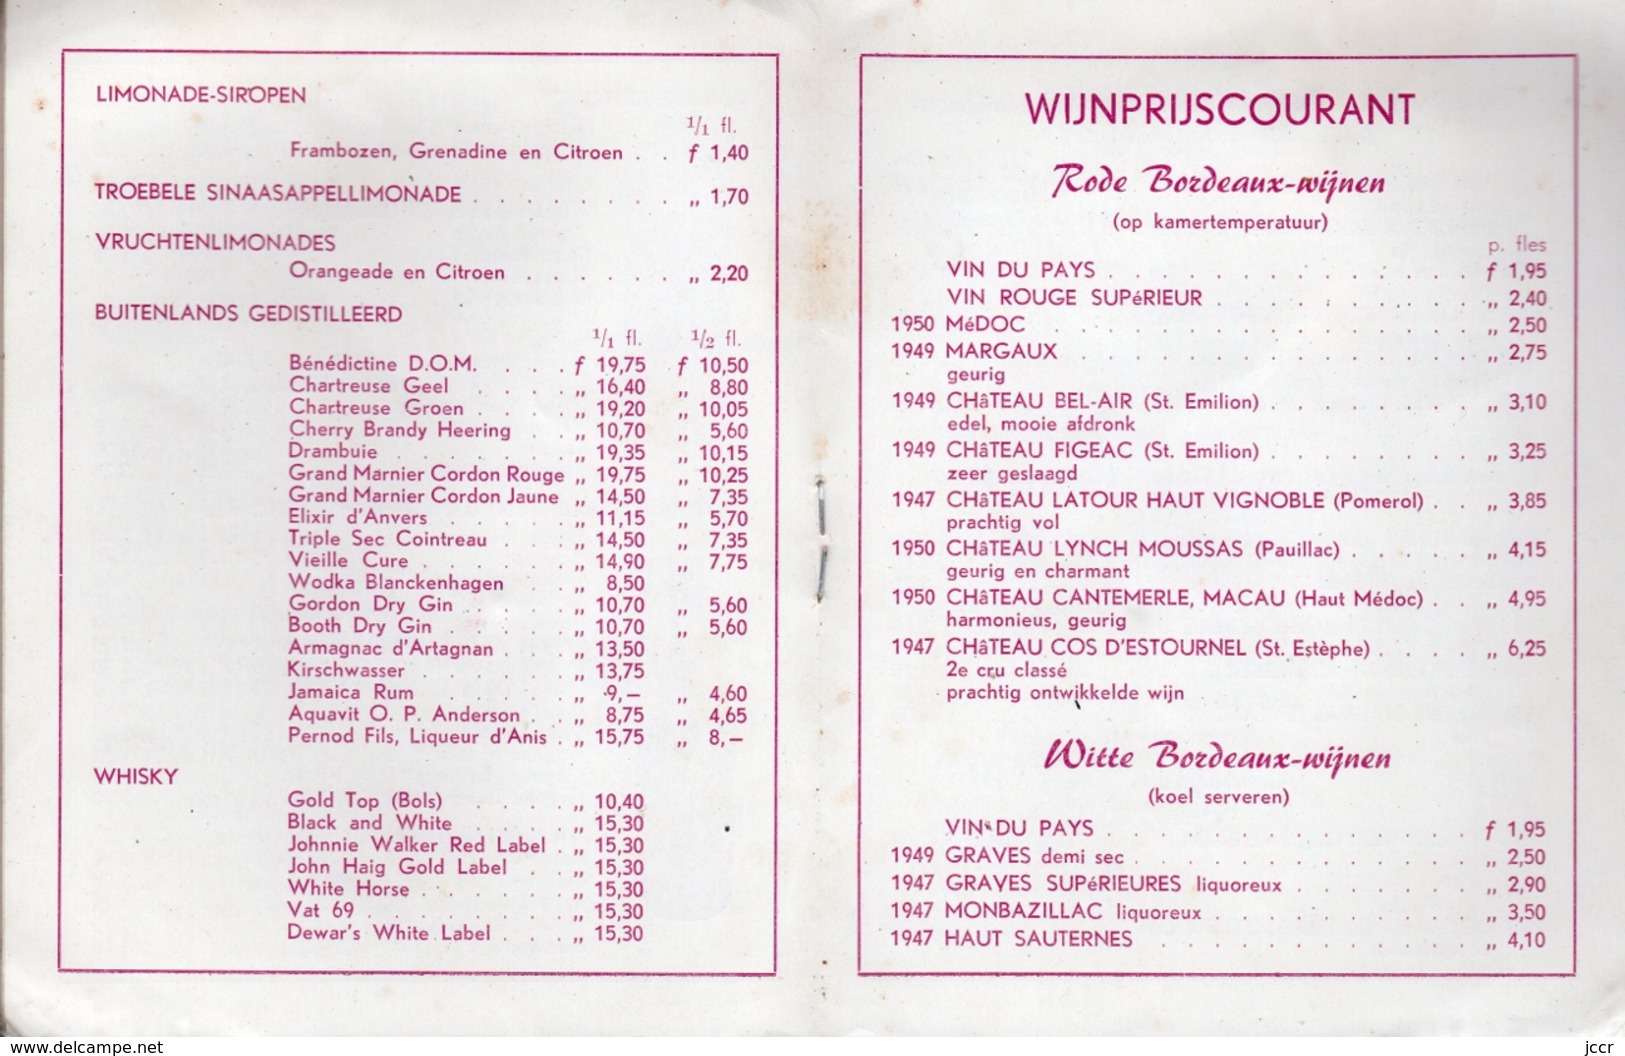 Slijterij H. C. Wyers & Co. Vriesestraat 32 - Dordrecht (Pays-Bas) - Prijscourant Vor Particulieren - December 1955 - Cucina & Vini